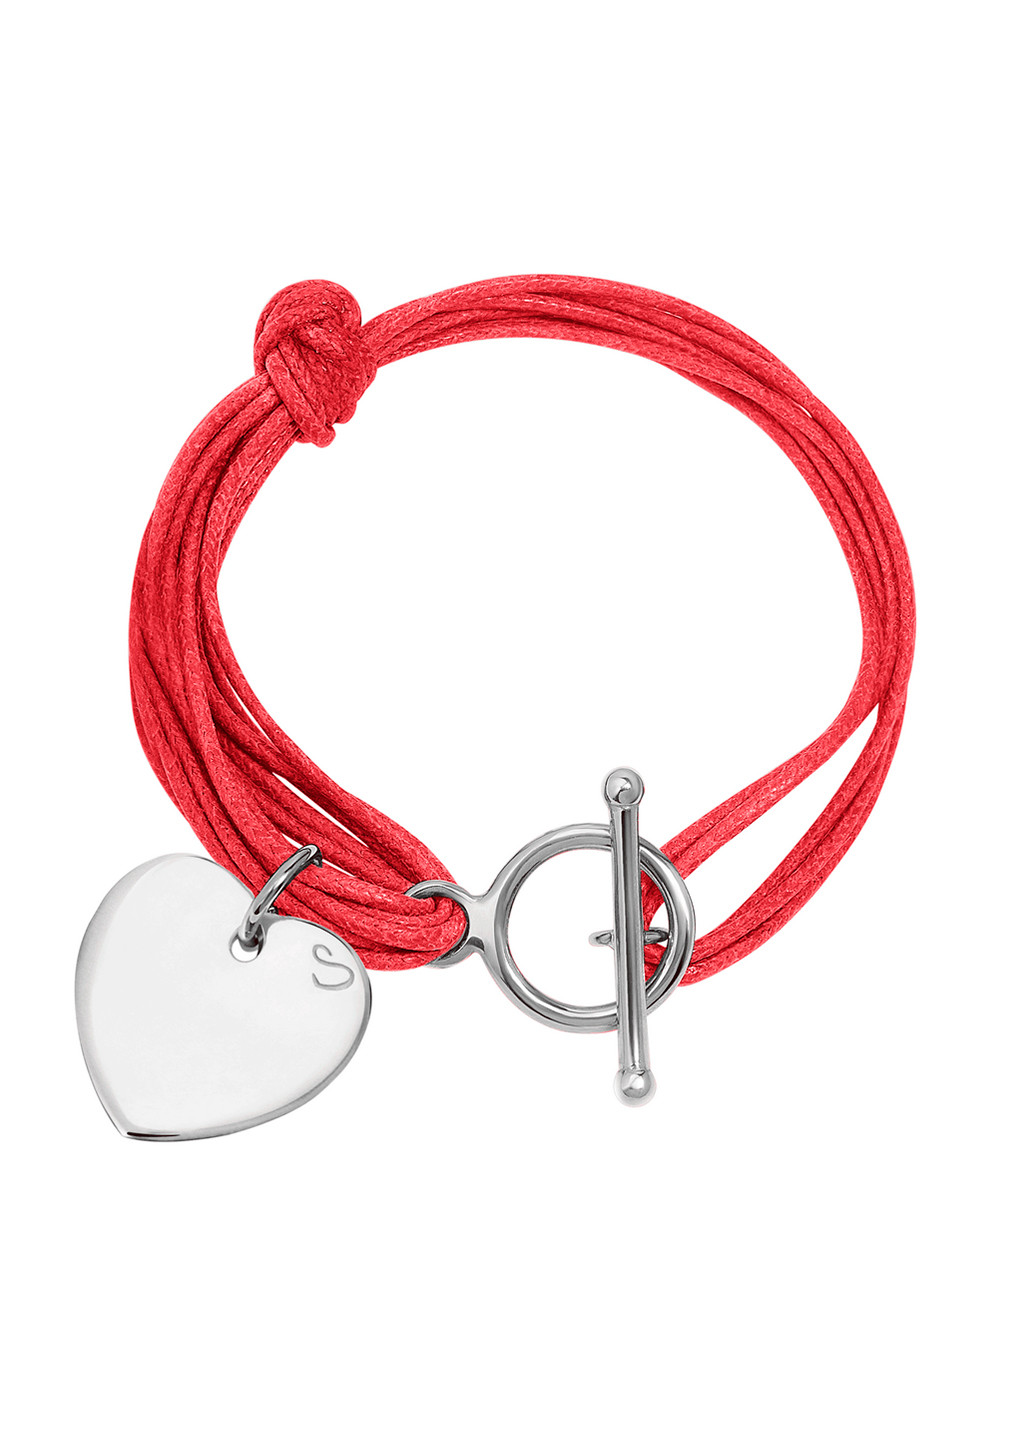 Срібний браслет Ліана з підвіскою «Серце» 16-18 см червоний Peninsula (224608768)